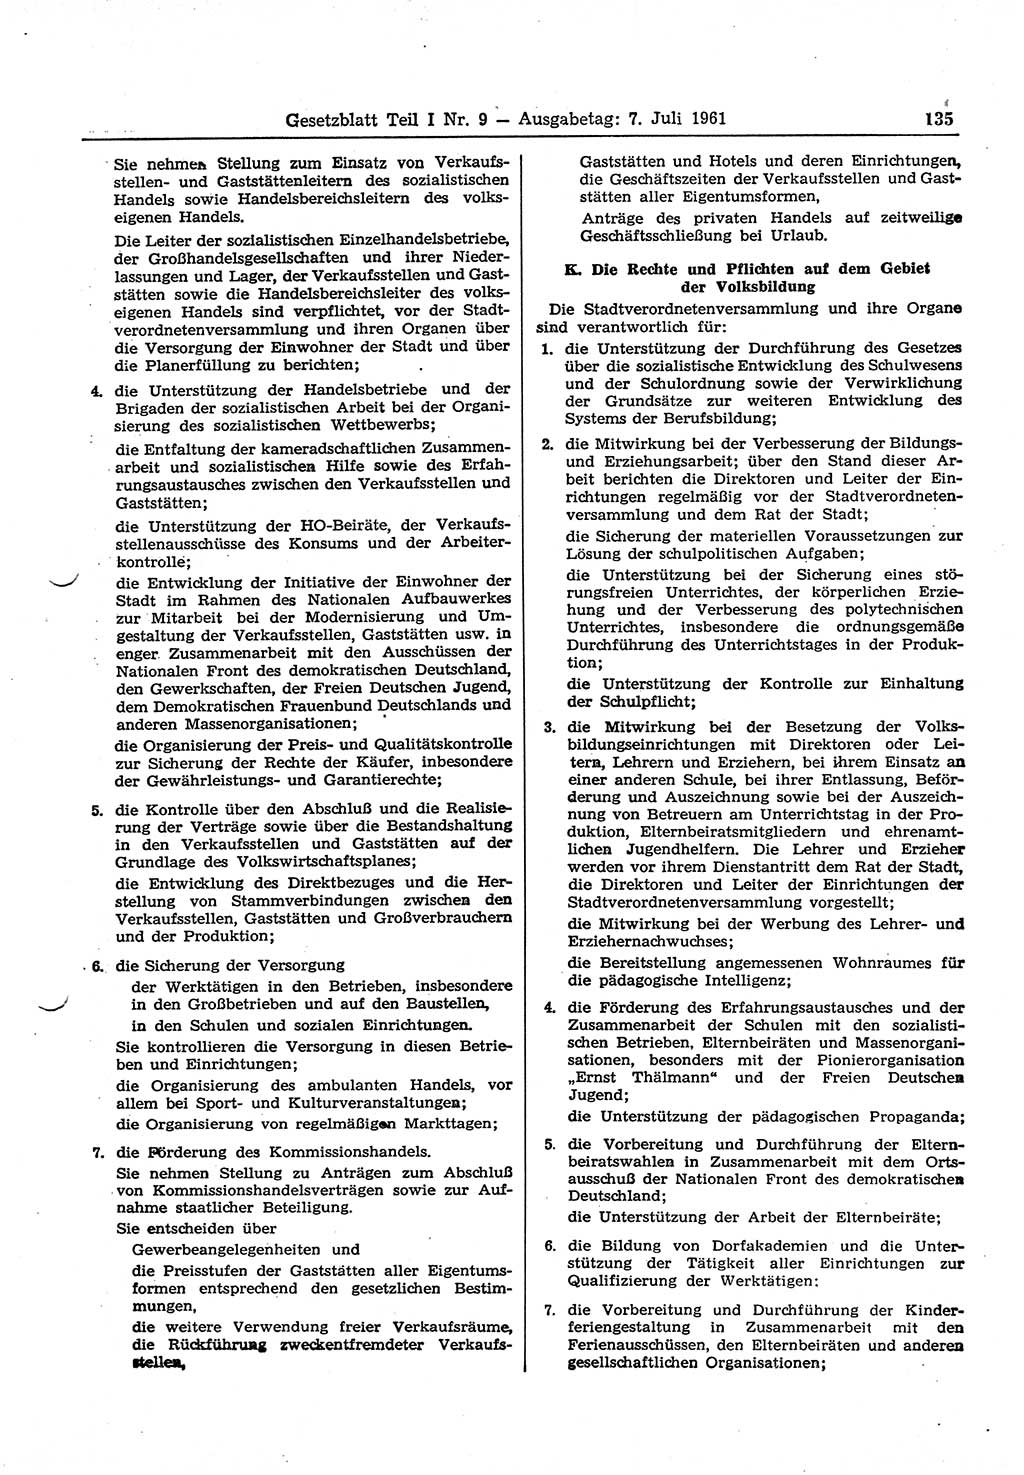 Gesetzblatt (GBl.) der Deutschen Demokratischen Republik (DDR) Teil Ⅰ 1961, Seite 135 (GBl. DDR Ⅰ 1961, S. 135)